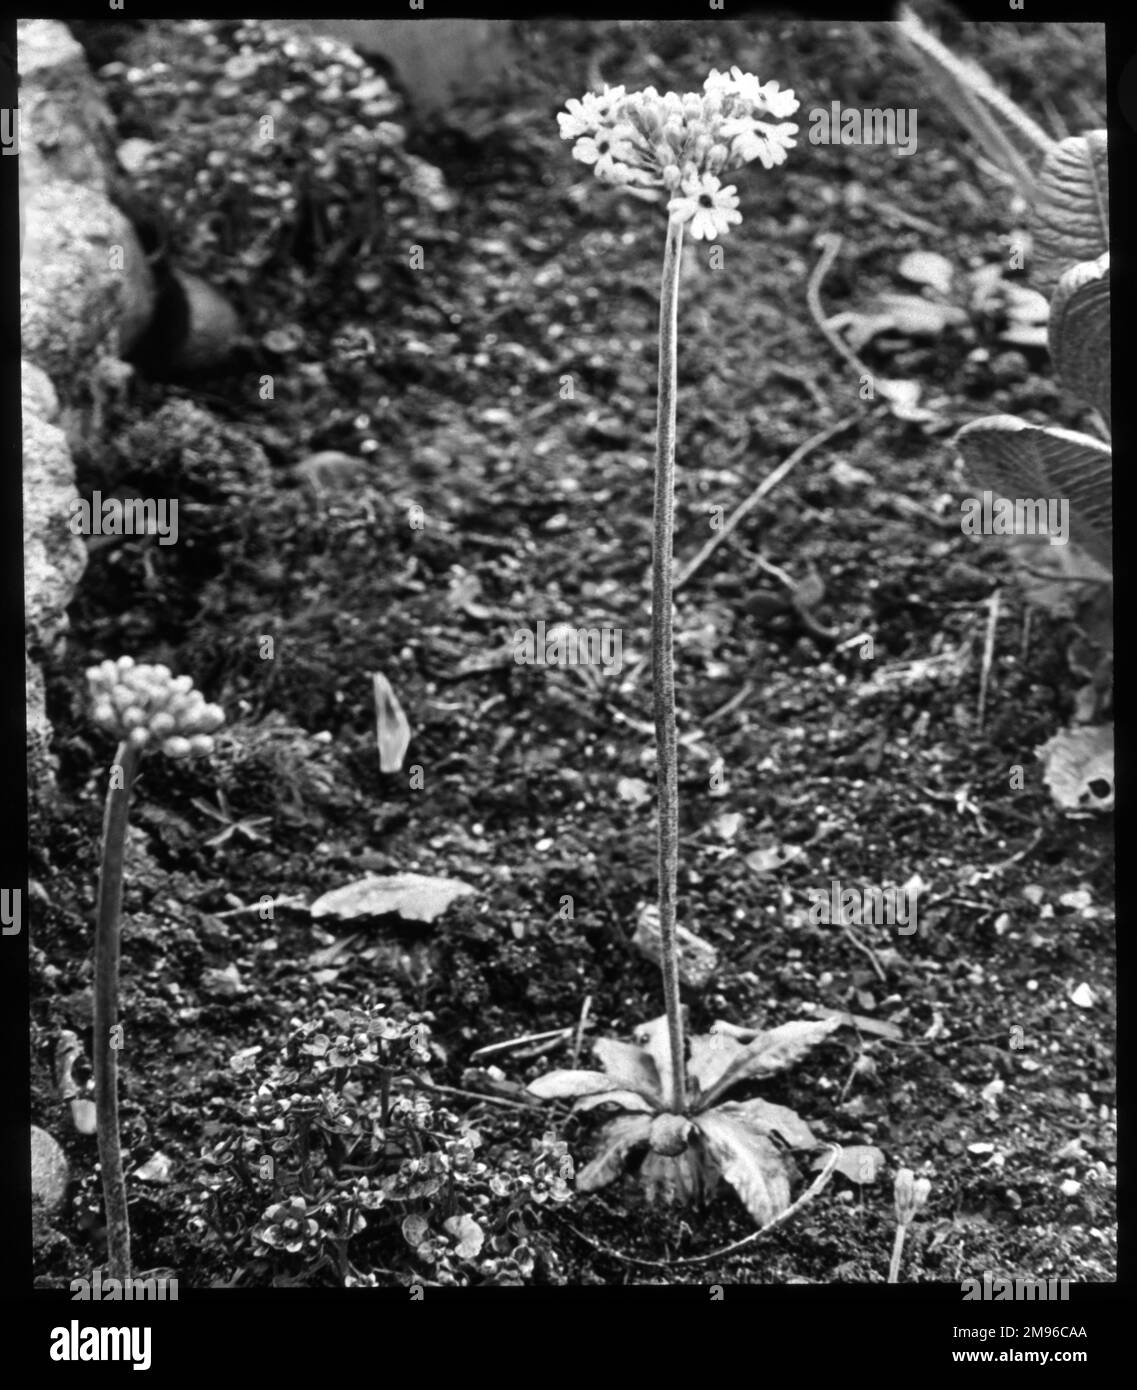 Primula Farinosa, perenne fiorito della famiglia delle Primulacee, con fiori viola-blu o rosa caramella. Il nome latino primula si riferisce ai fiori che sono tra i primi ad aprirsi in primavera. Foto Stock